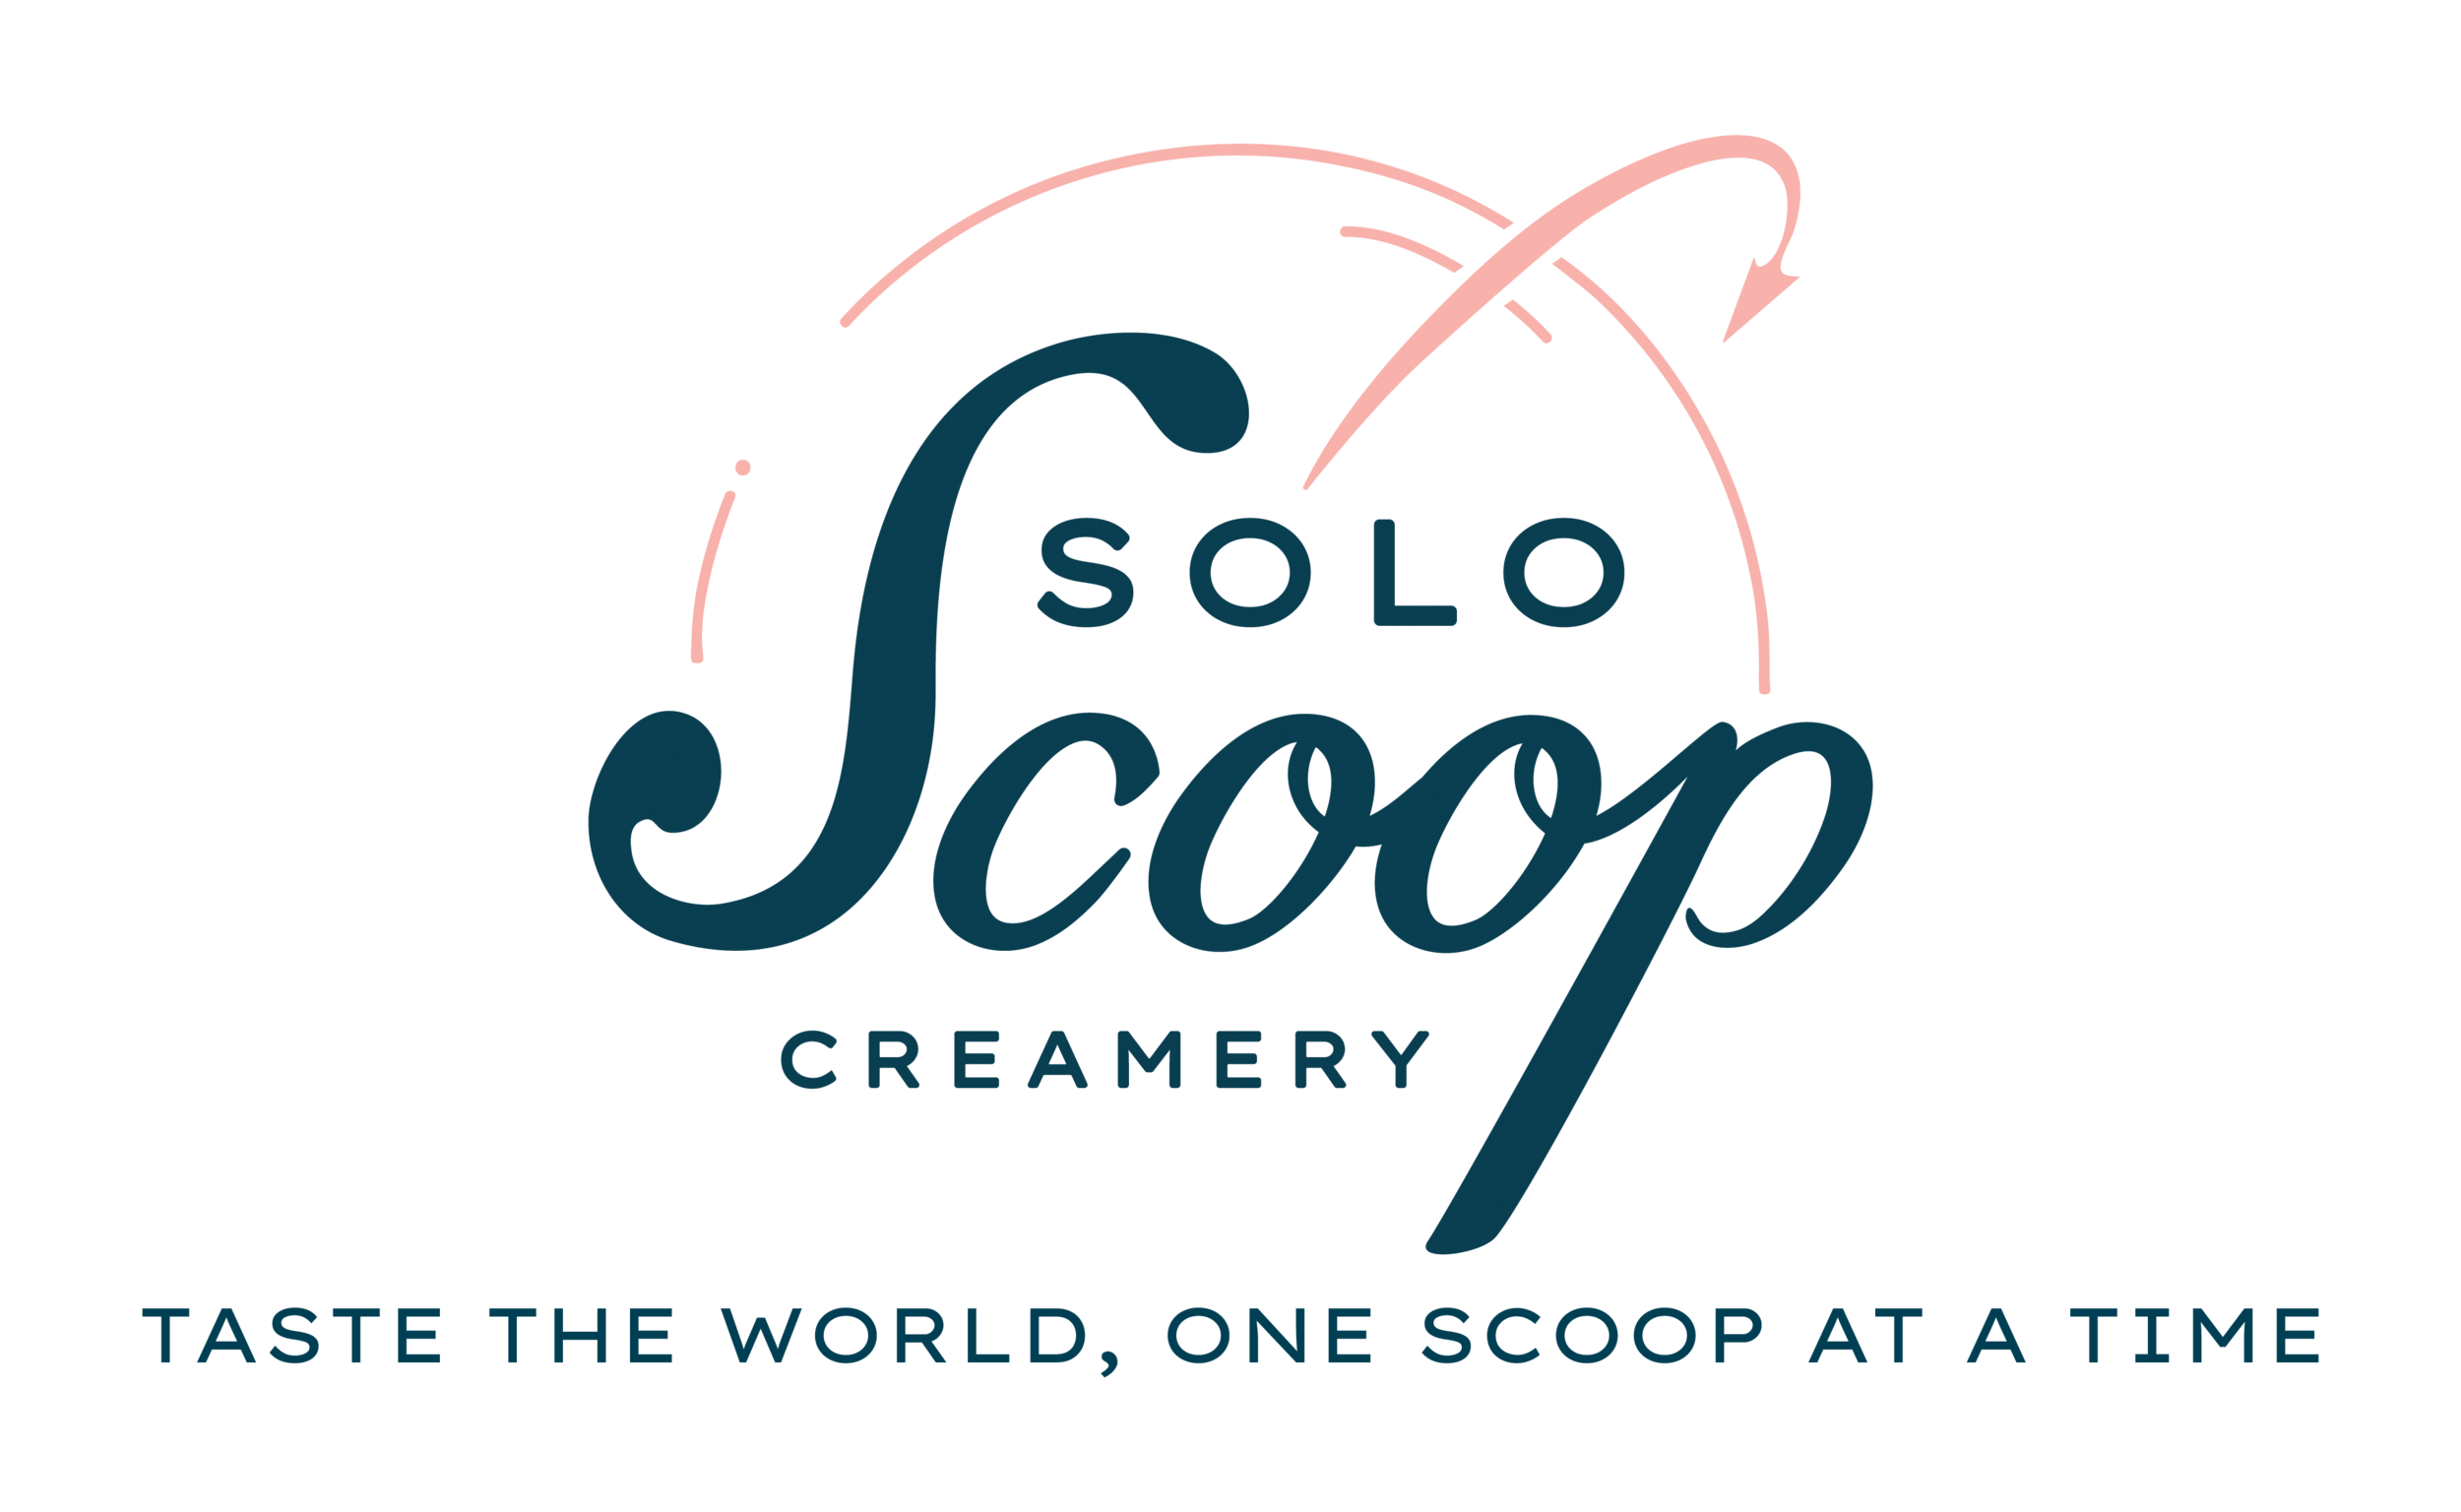 SOLO SCOOP CREAMERY